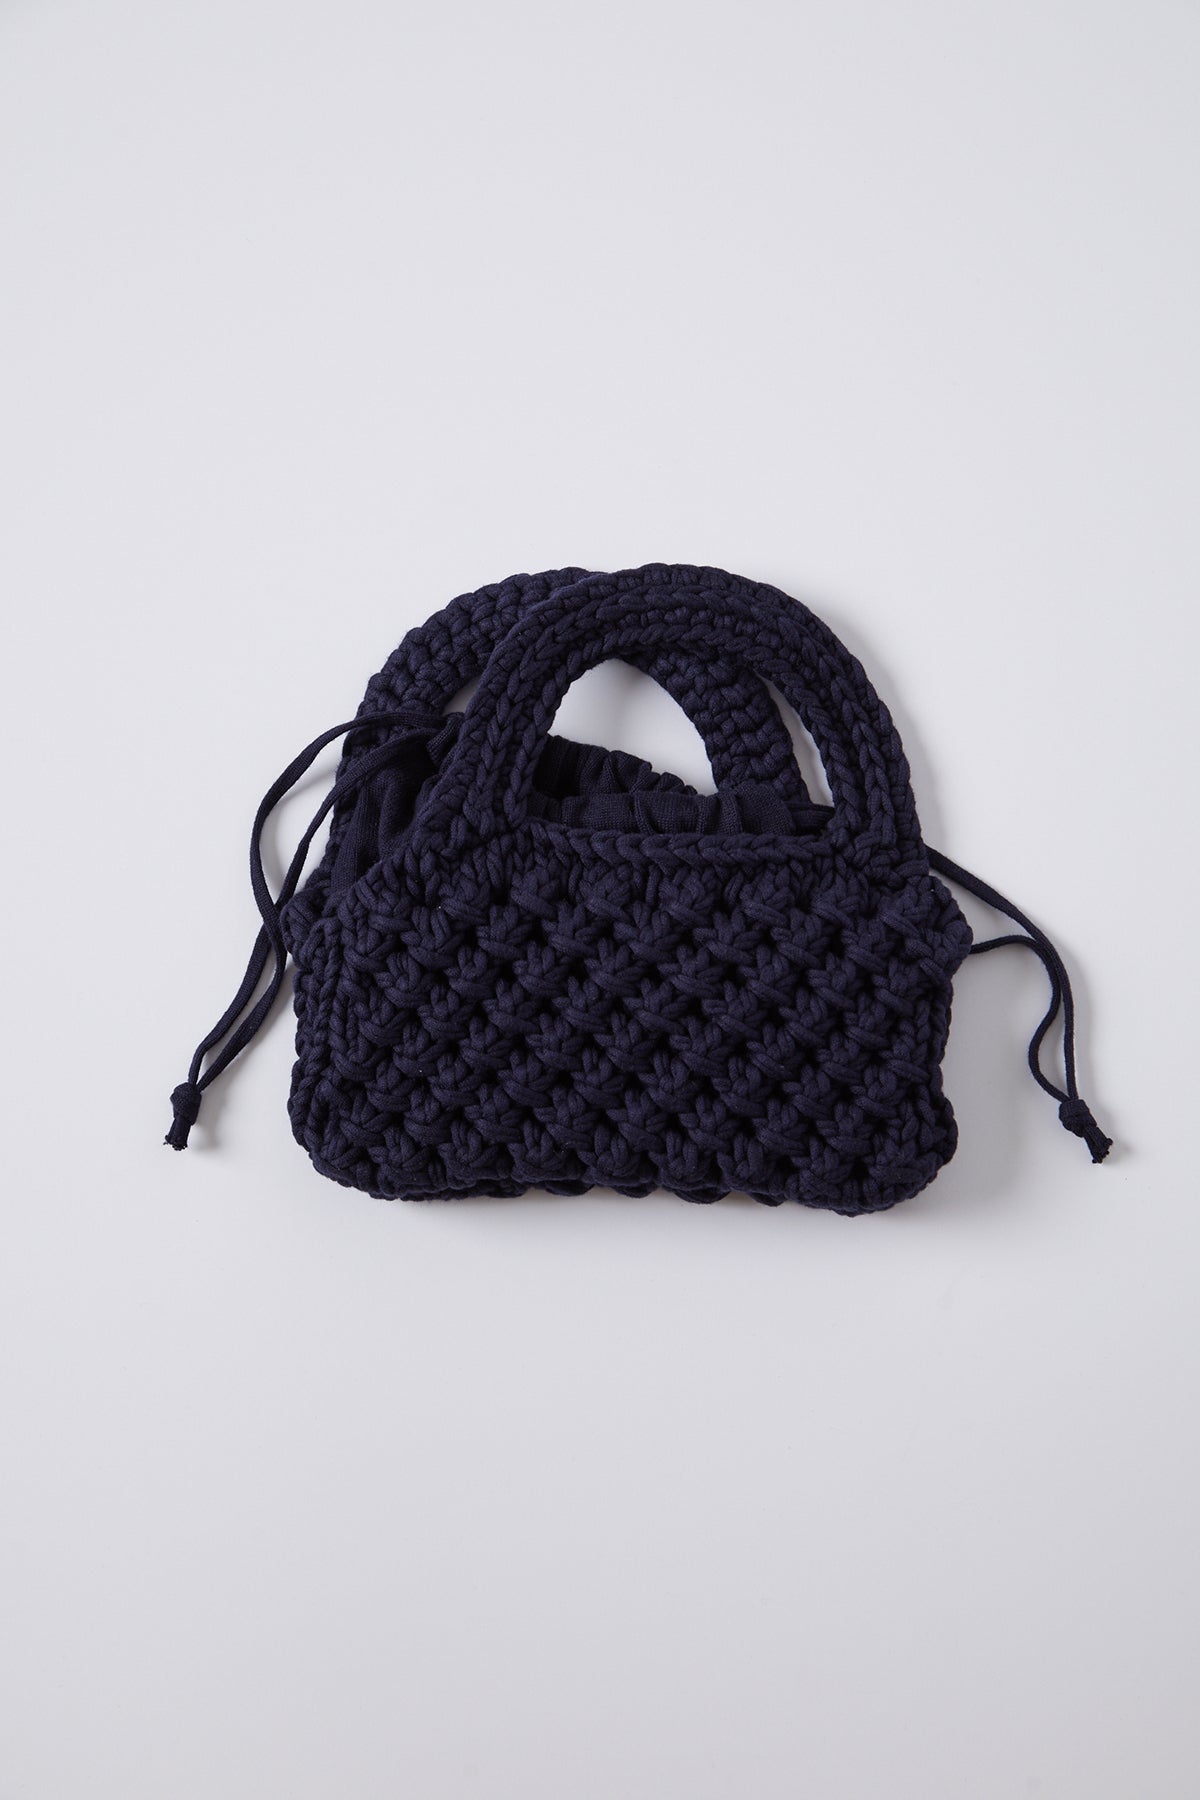 Bennie Crochet Bag in navy-25994891591873